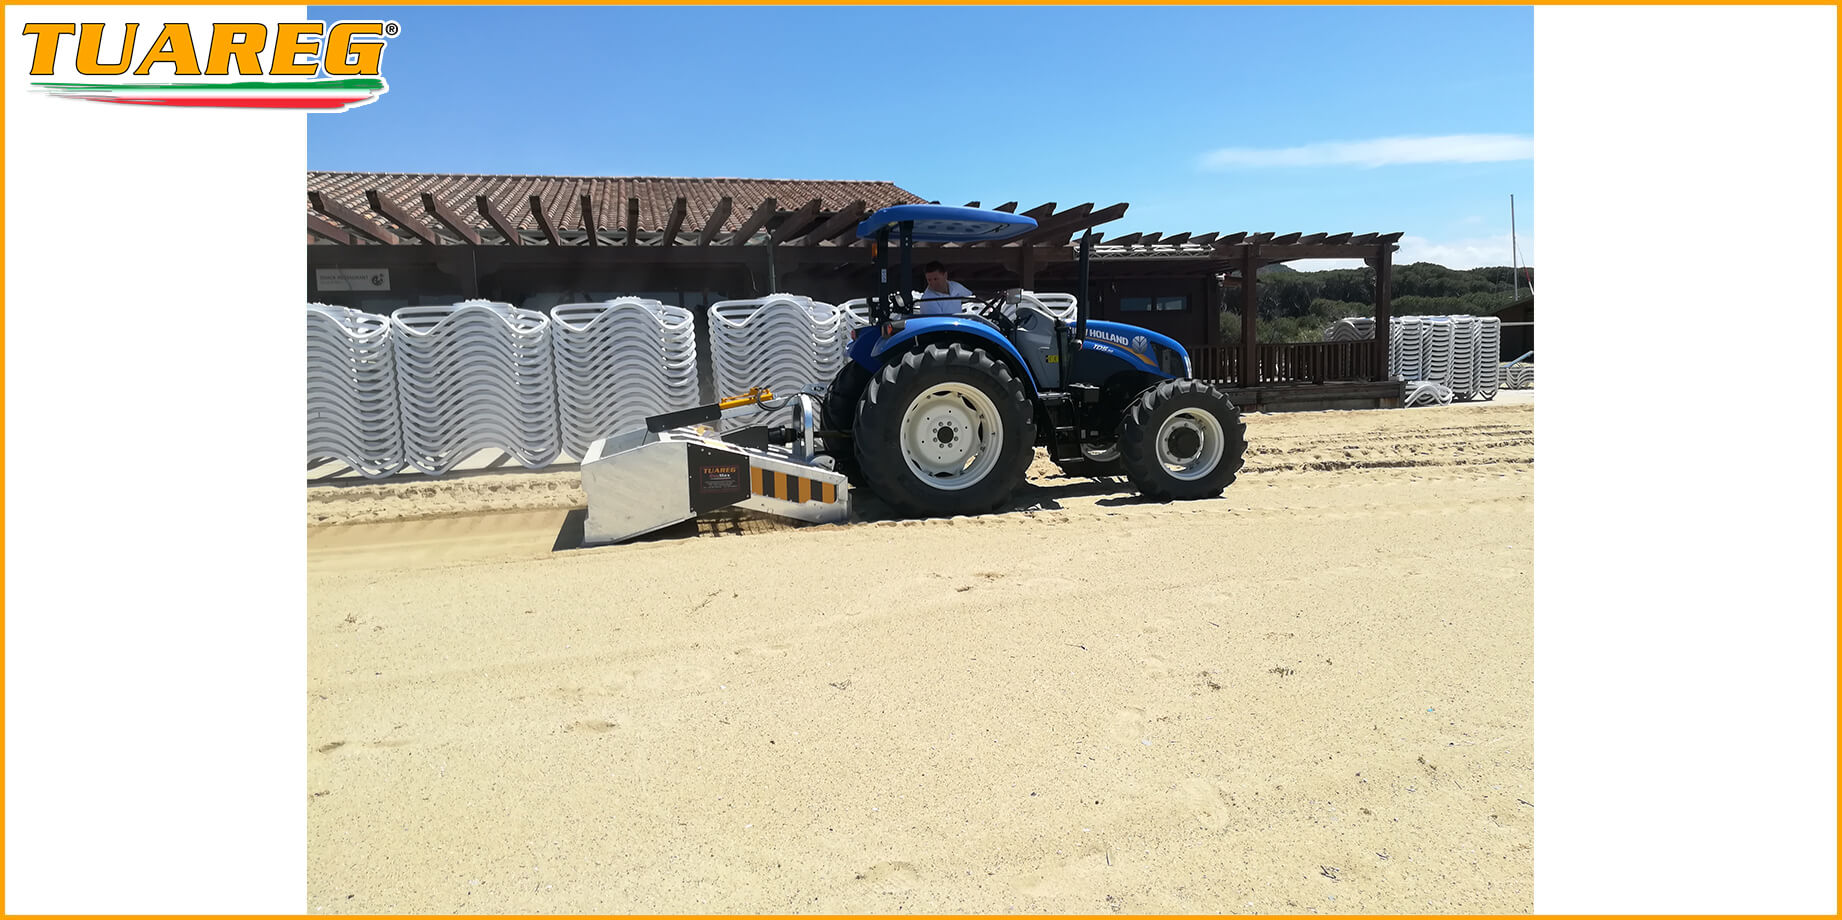 Tuareg EvoMax - Machine de Nettoyage de Plage - Attaché au Tracteur